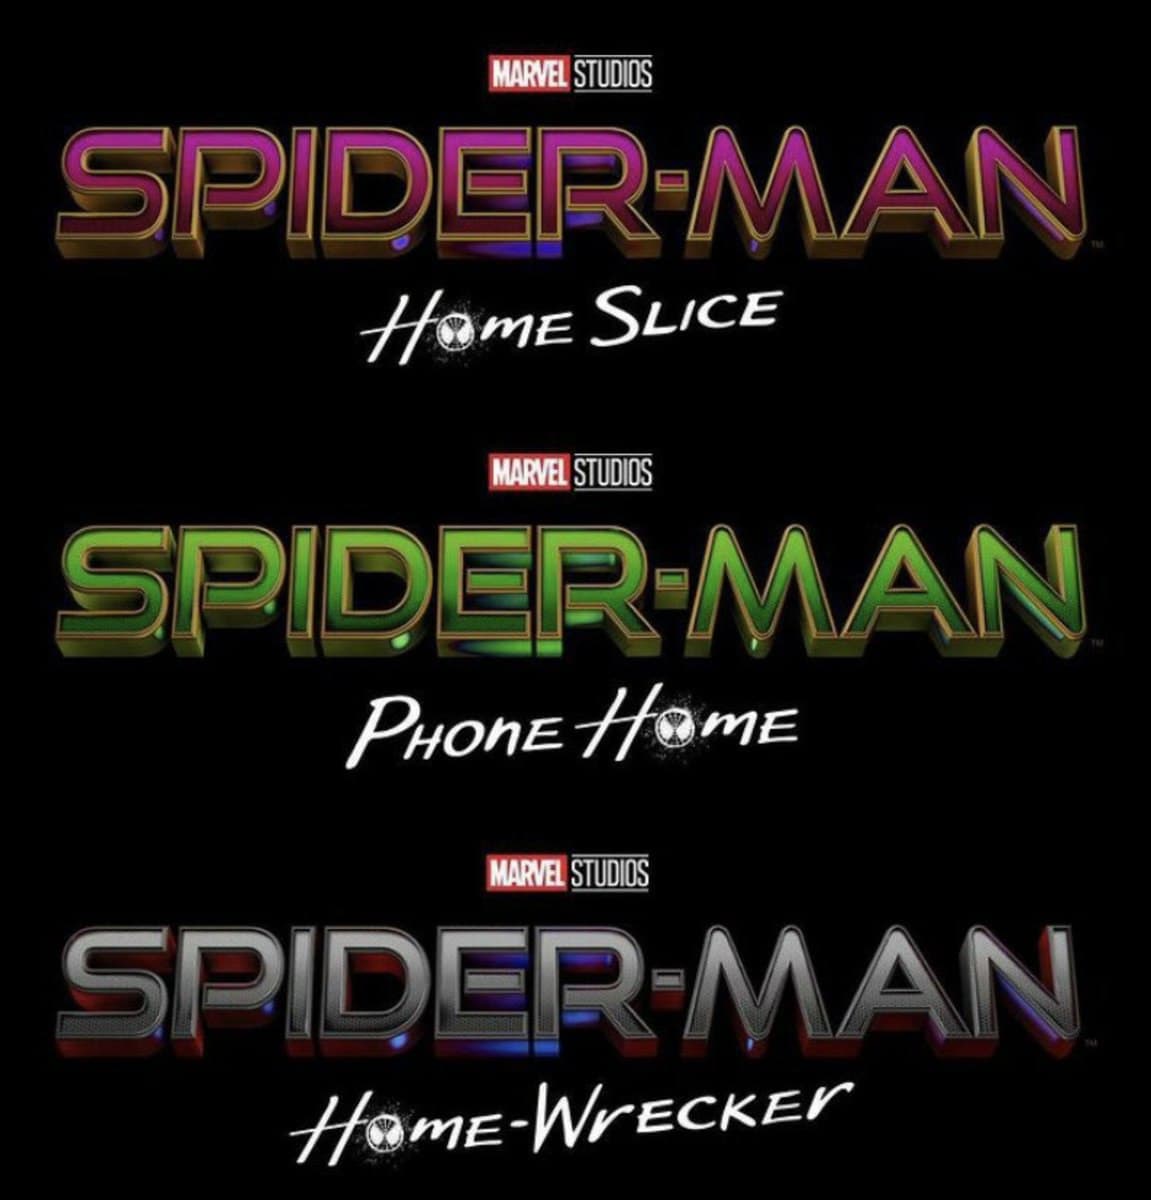 لوگو نام های غیر واقعی منتشر شده فیلم Spider-Man 3